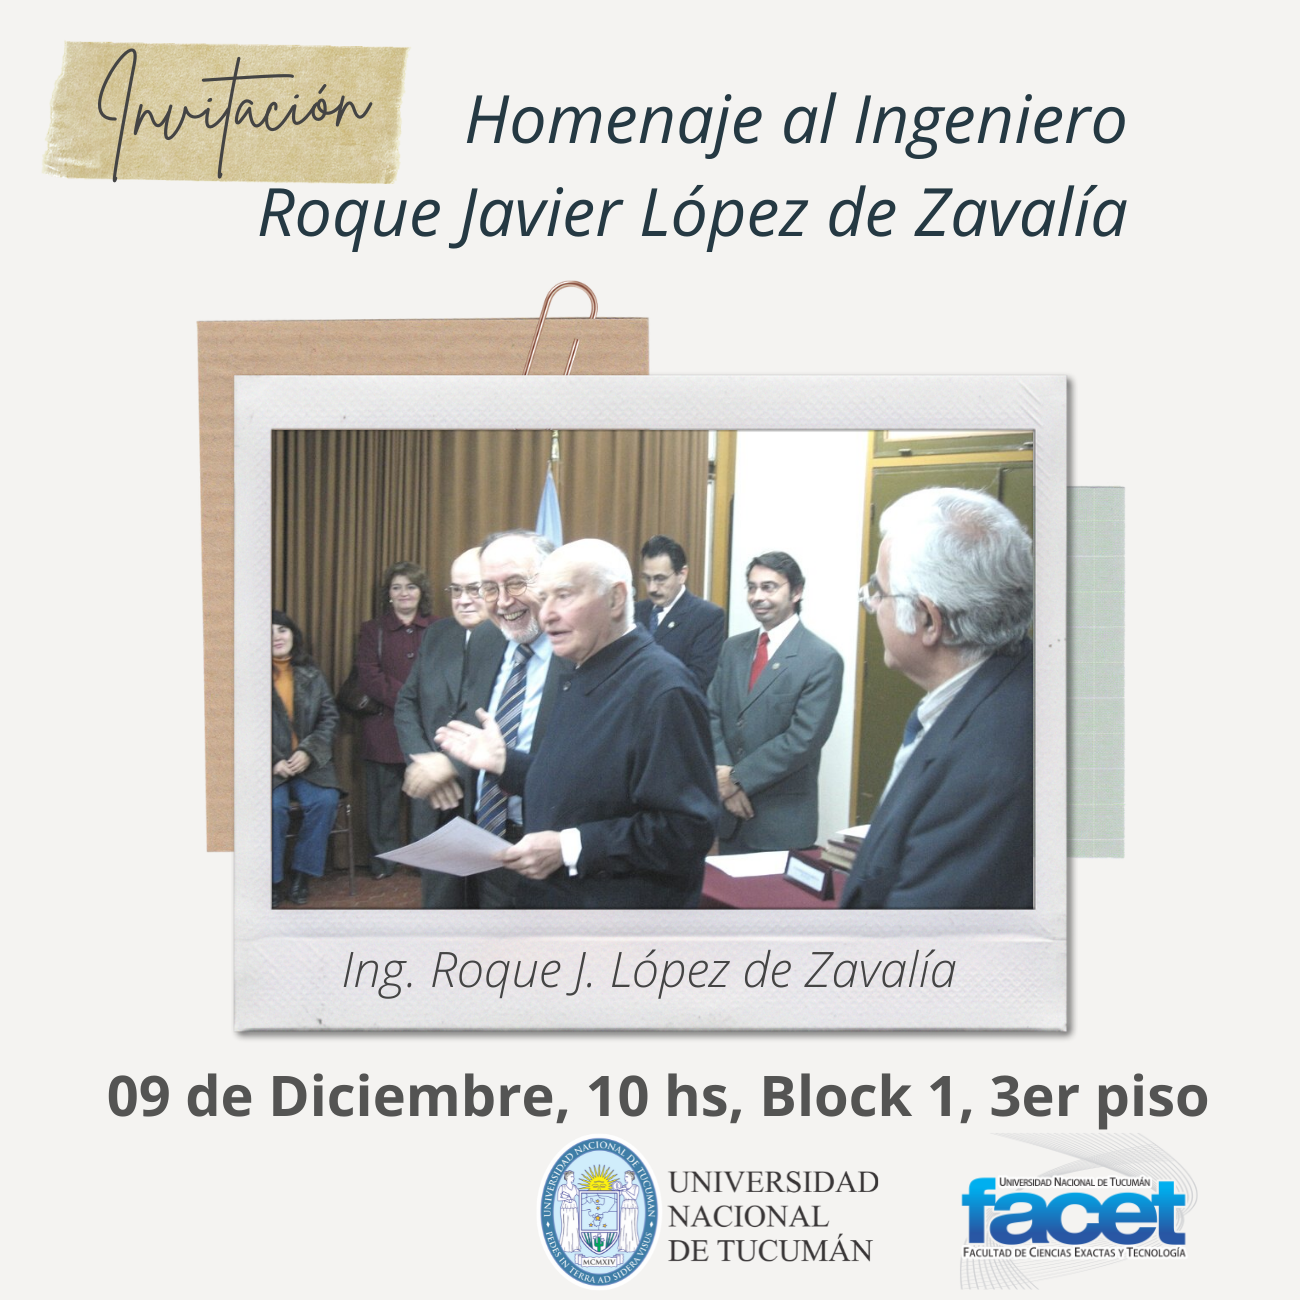 Invitación | El Laboratorio Docente de Electrónica se llamará “Ing. Roque J. López de Zavalía”